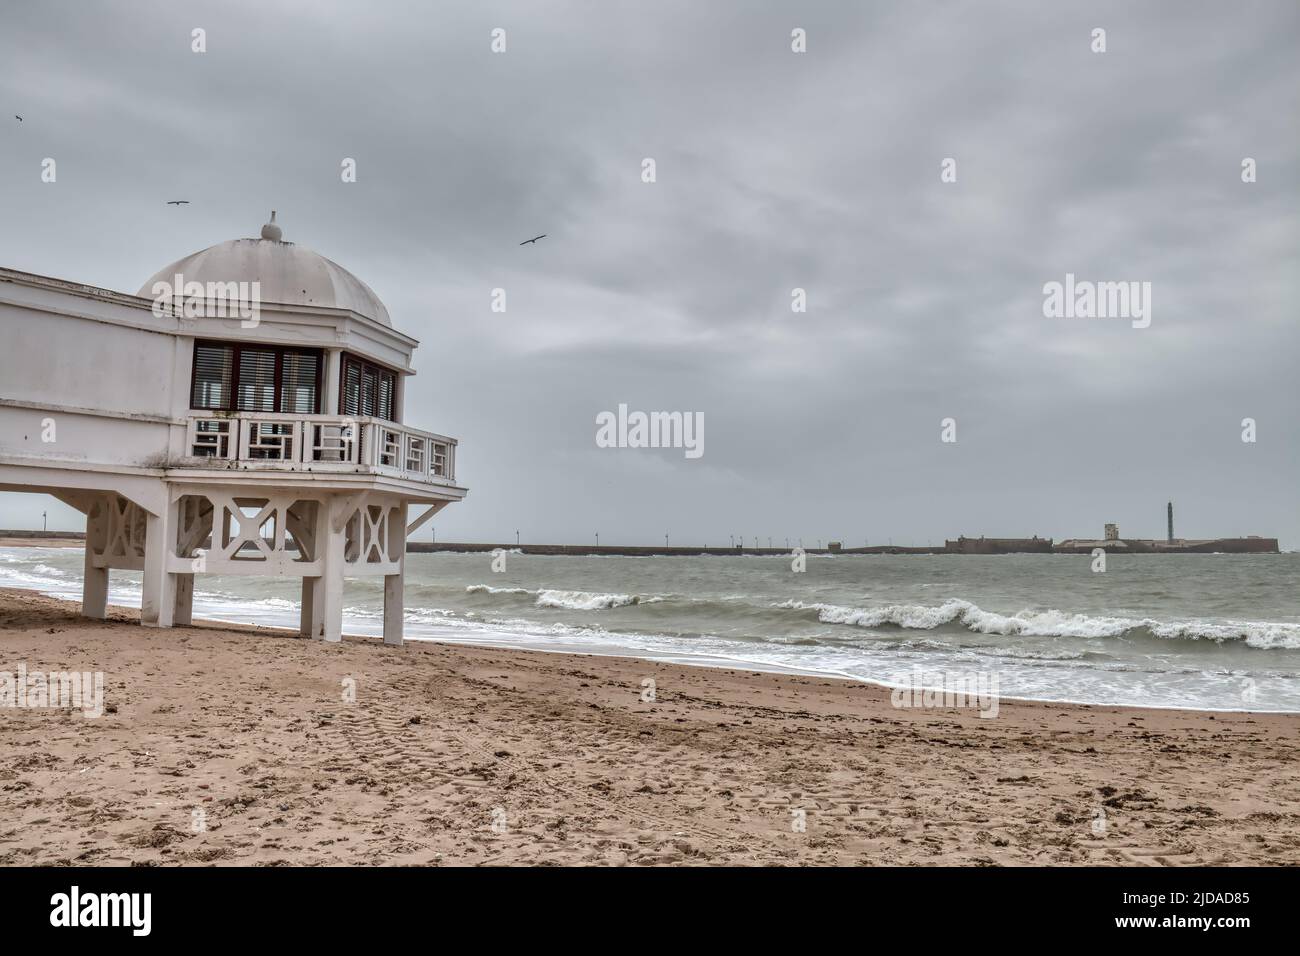 Caleta beach on a cloudy day, in Cadiz, Spain Stock Photo